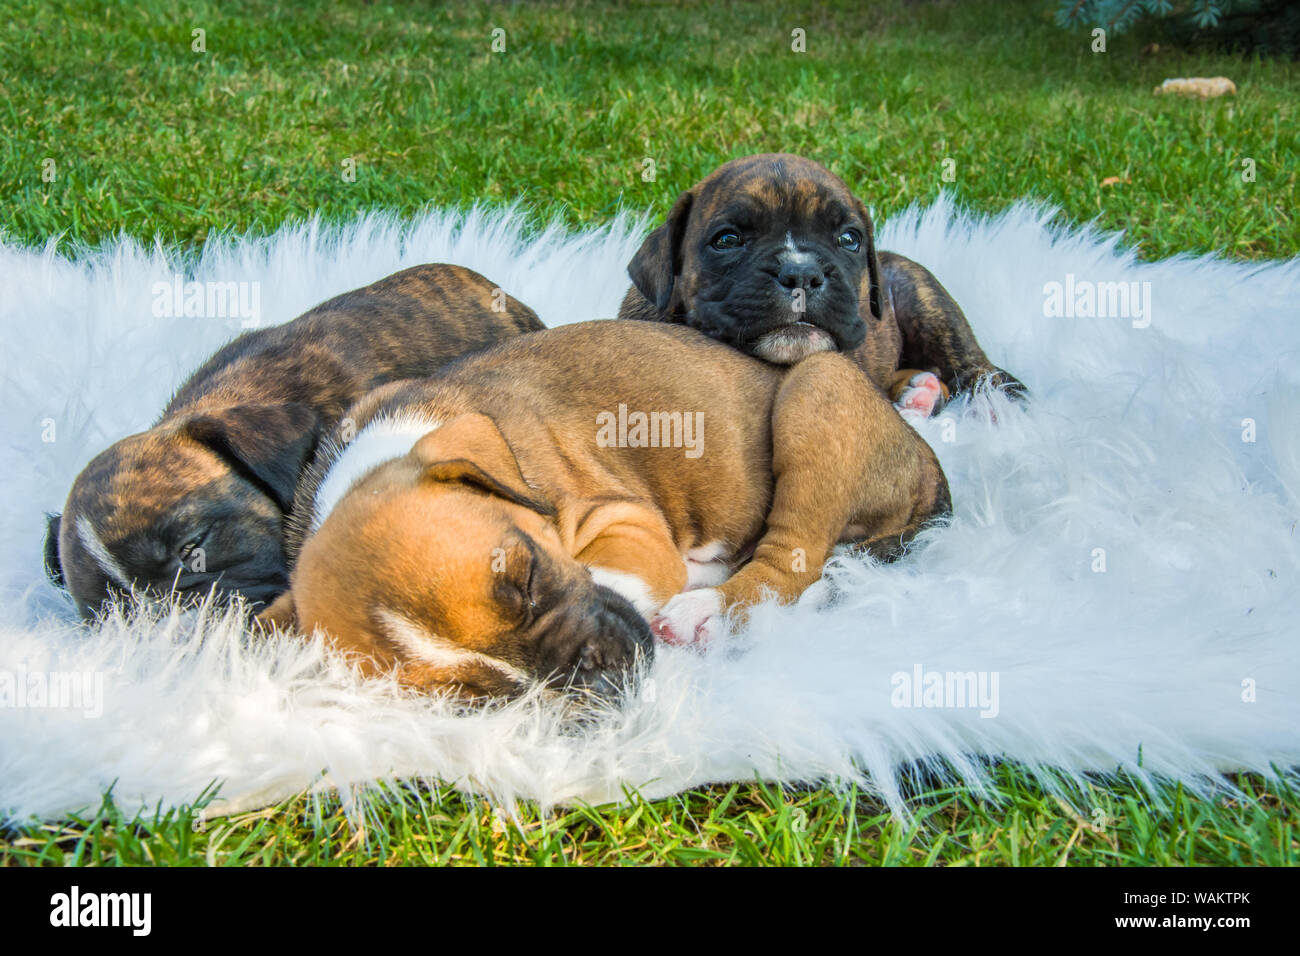 Three boxer puppies on a white blanket Stock Photo